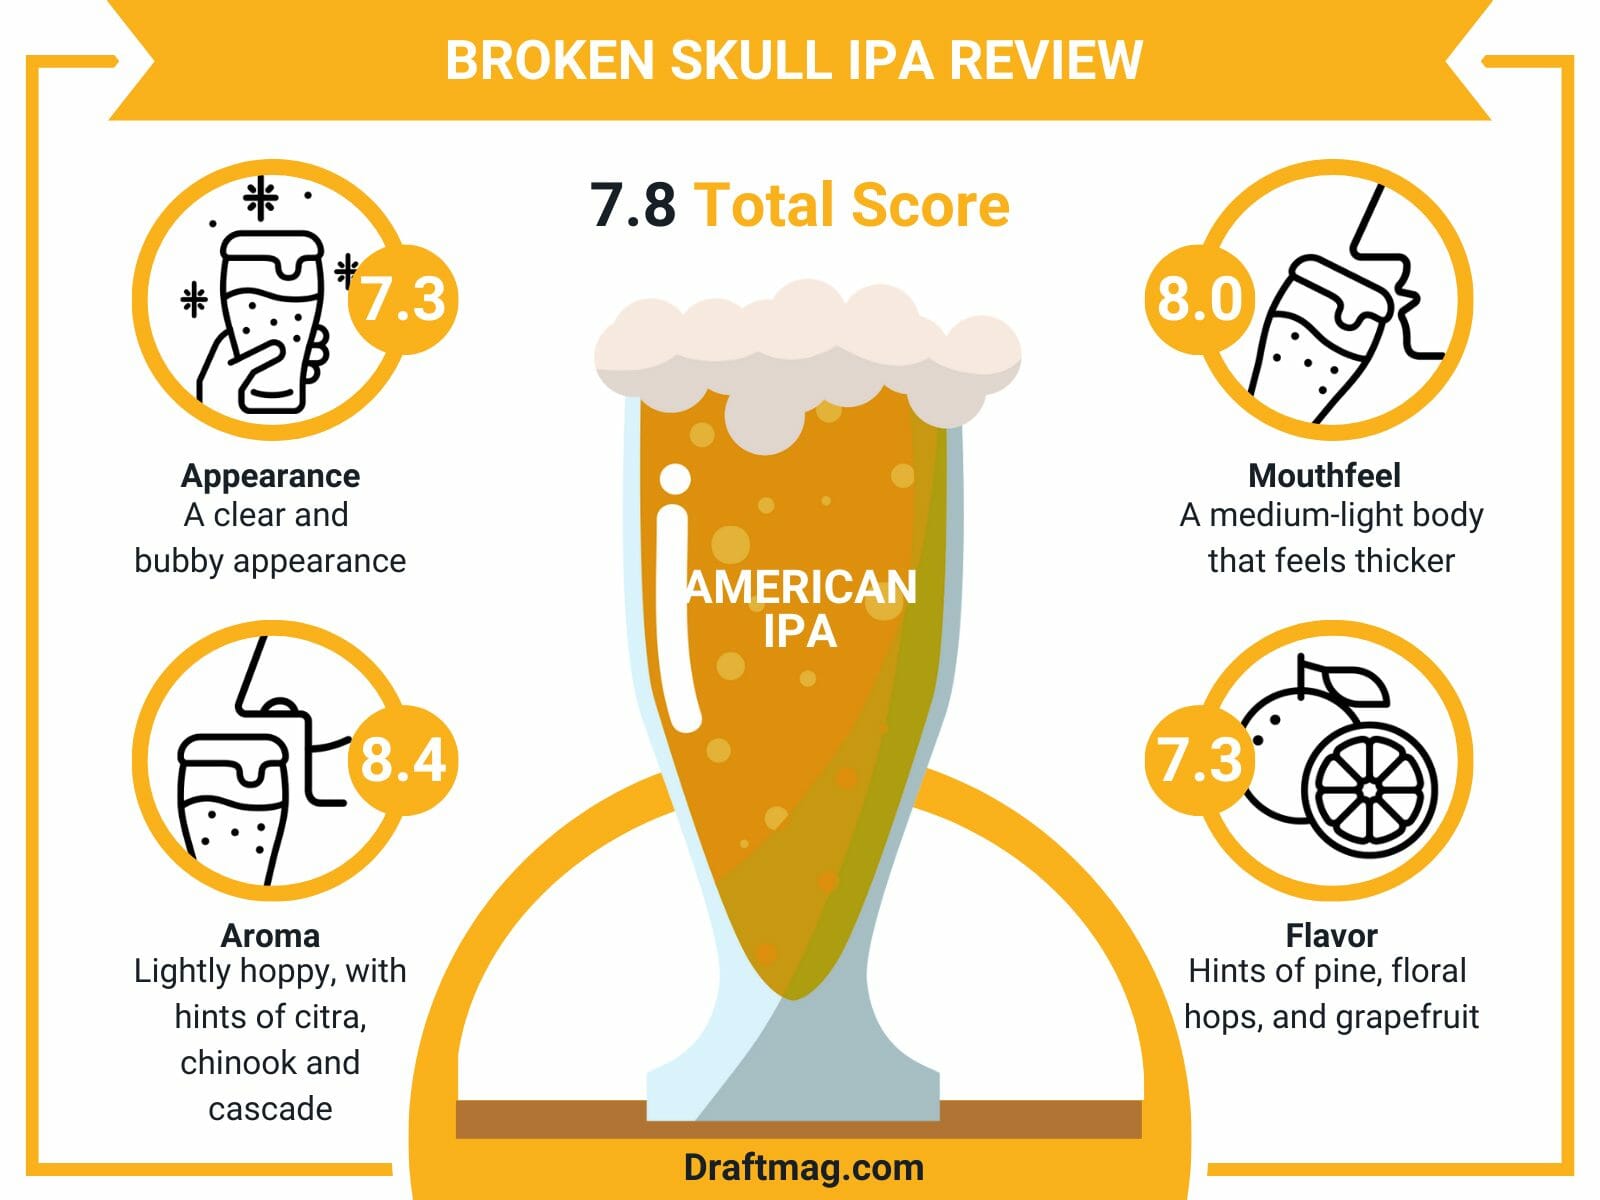 Broken skull ipa review infographic